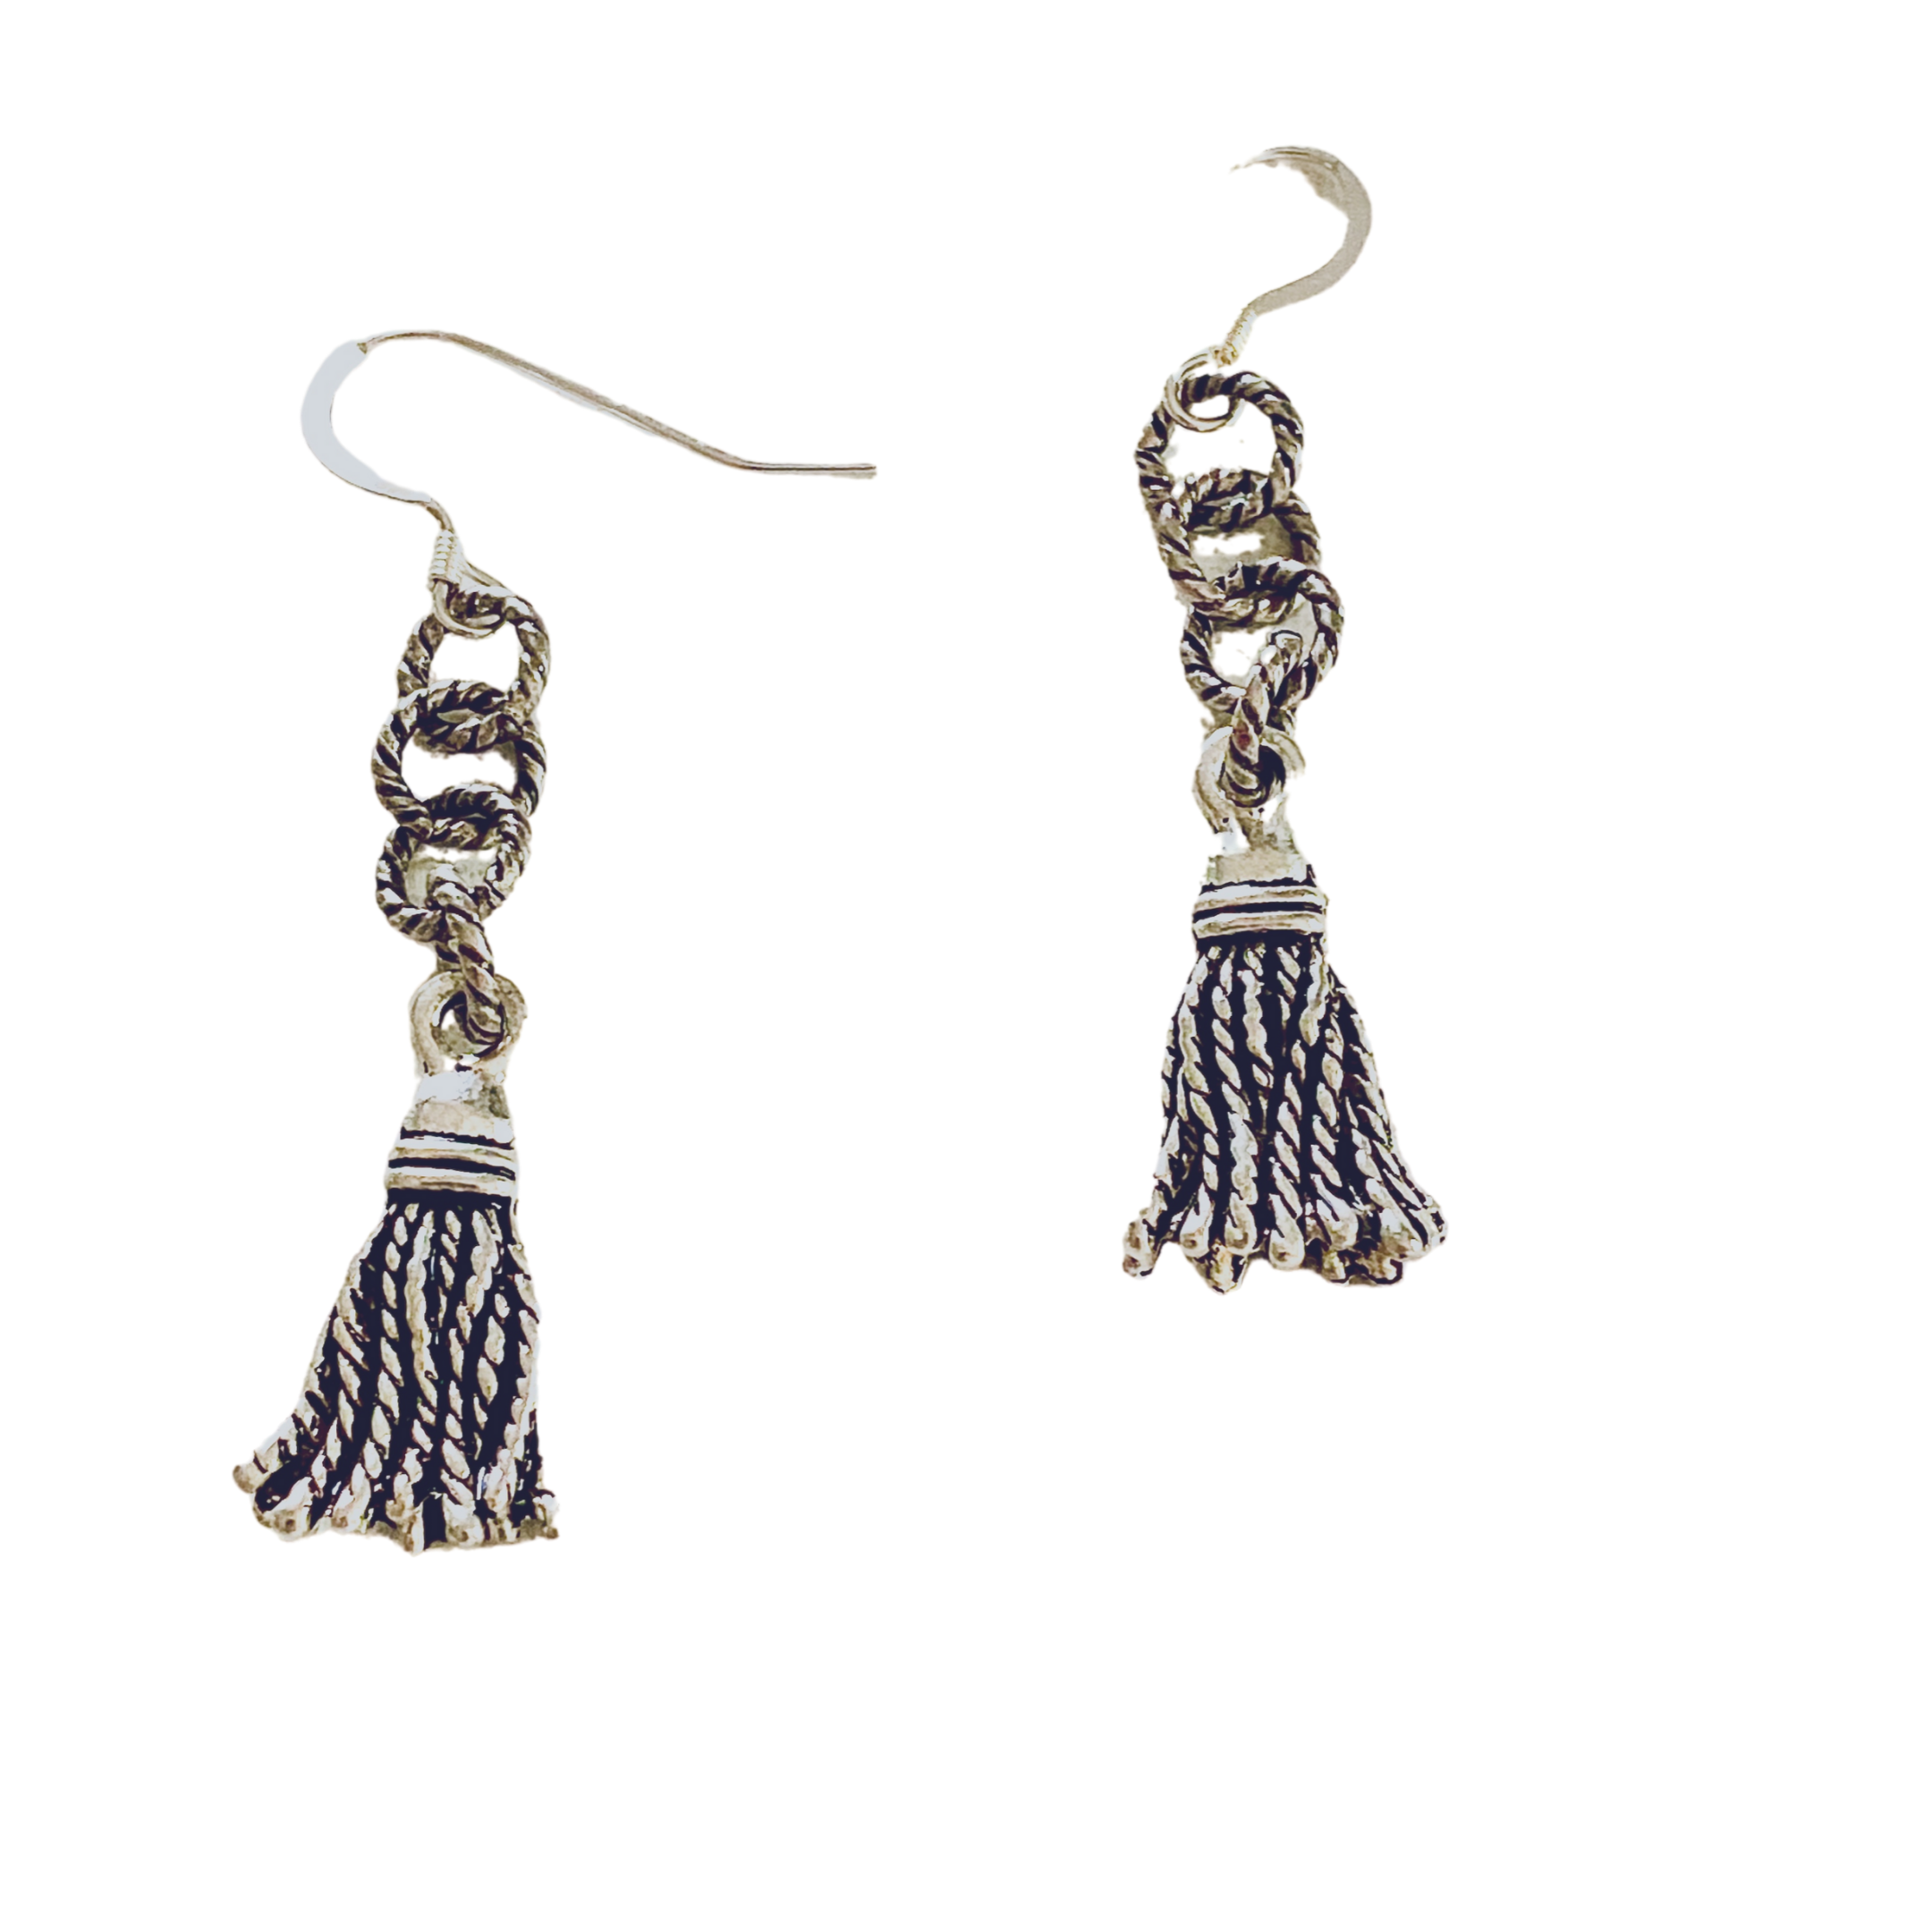 Tassel Silver Earrings - Irit Sorokin Designs Jewelry